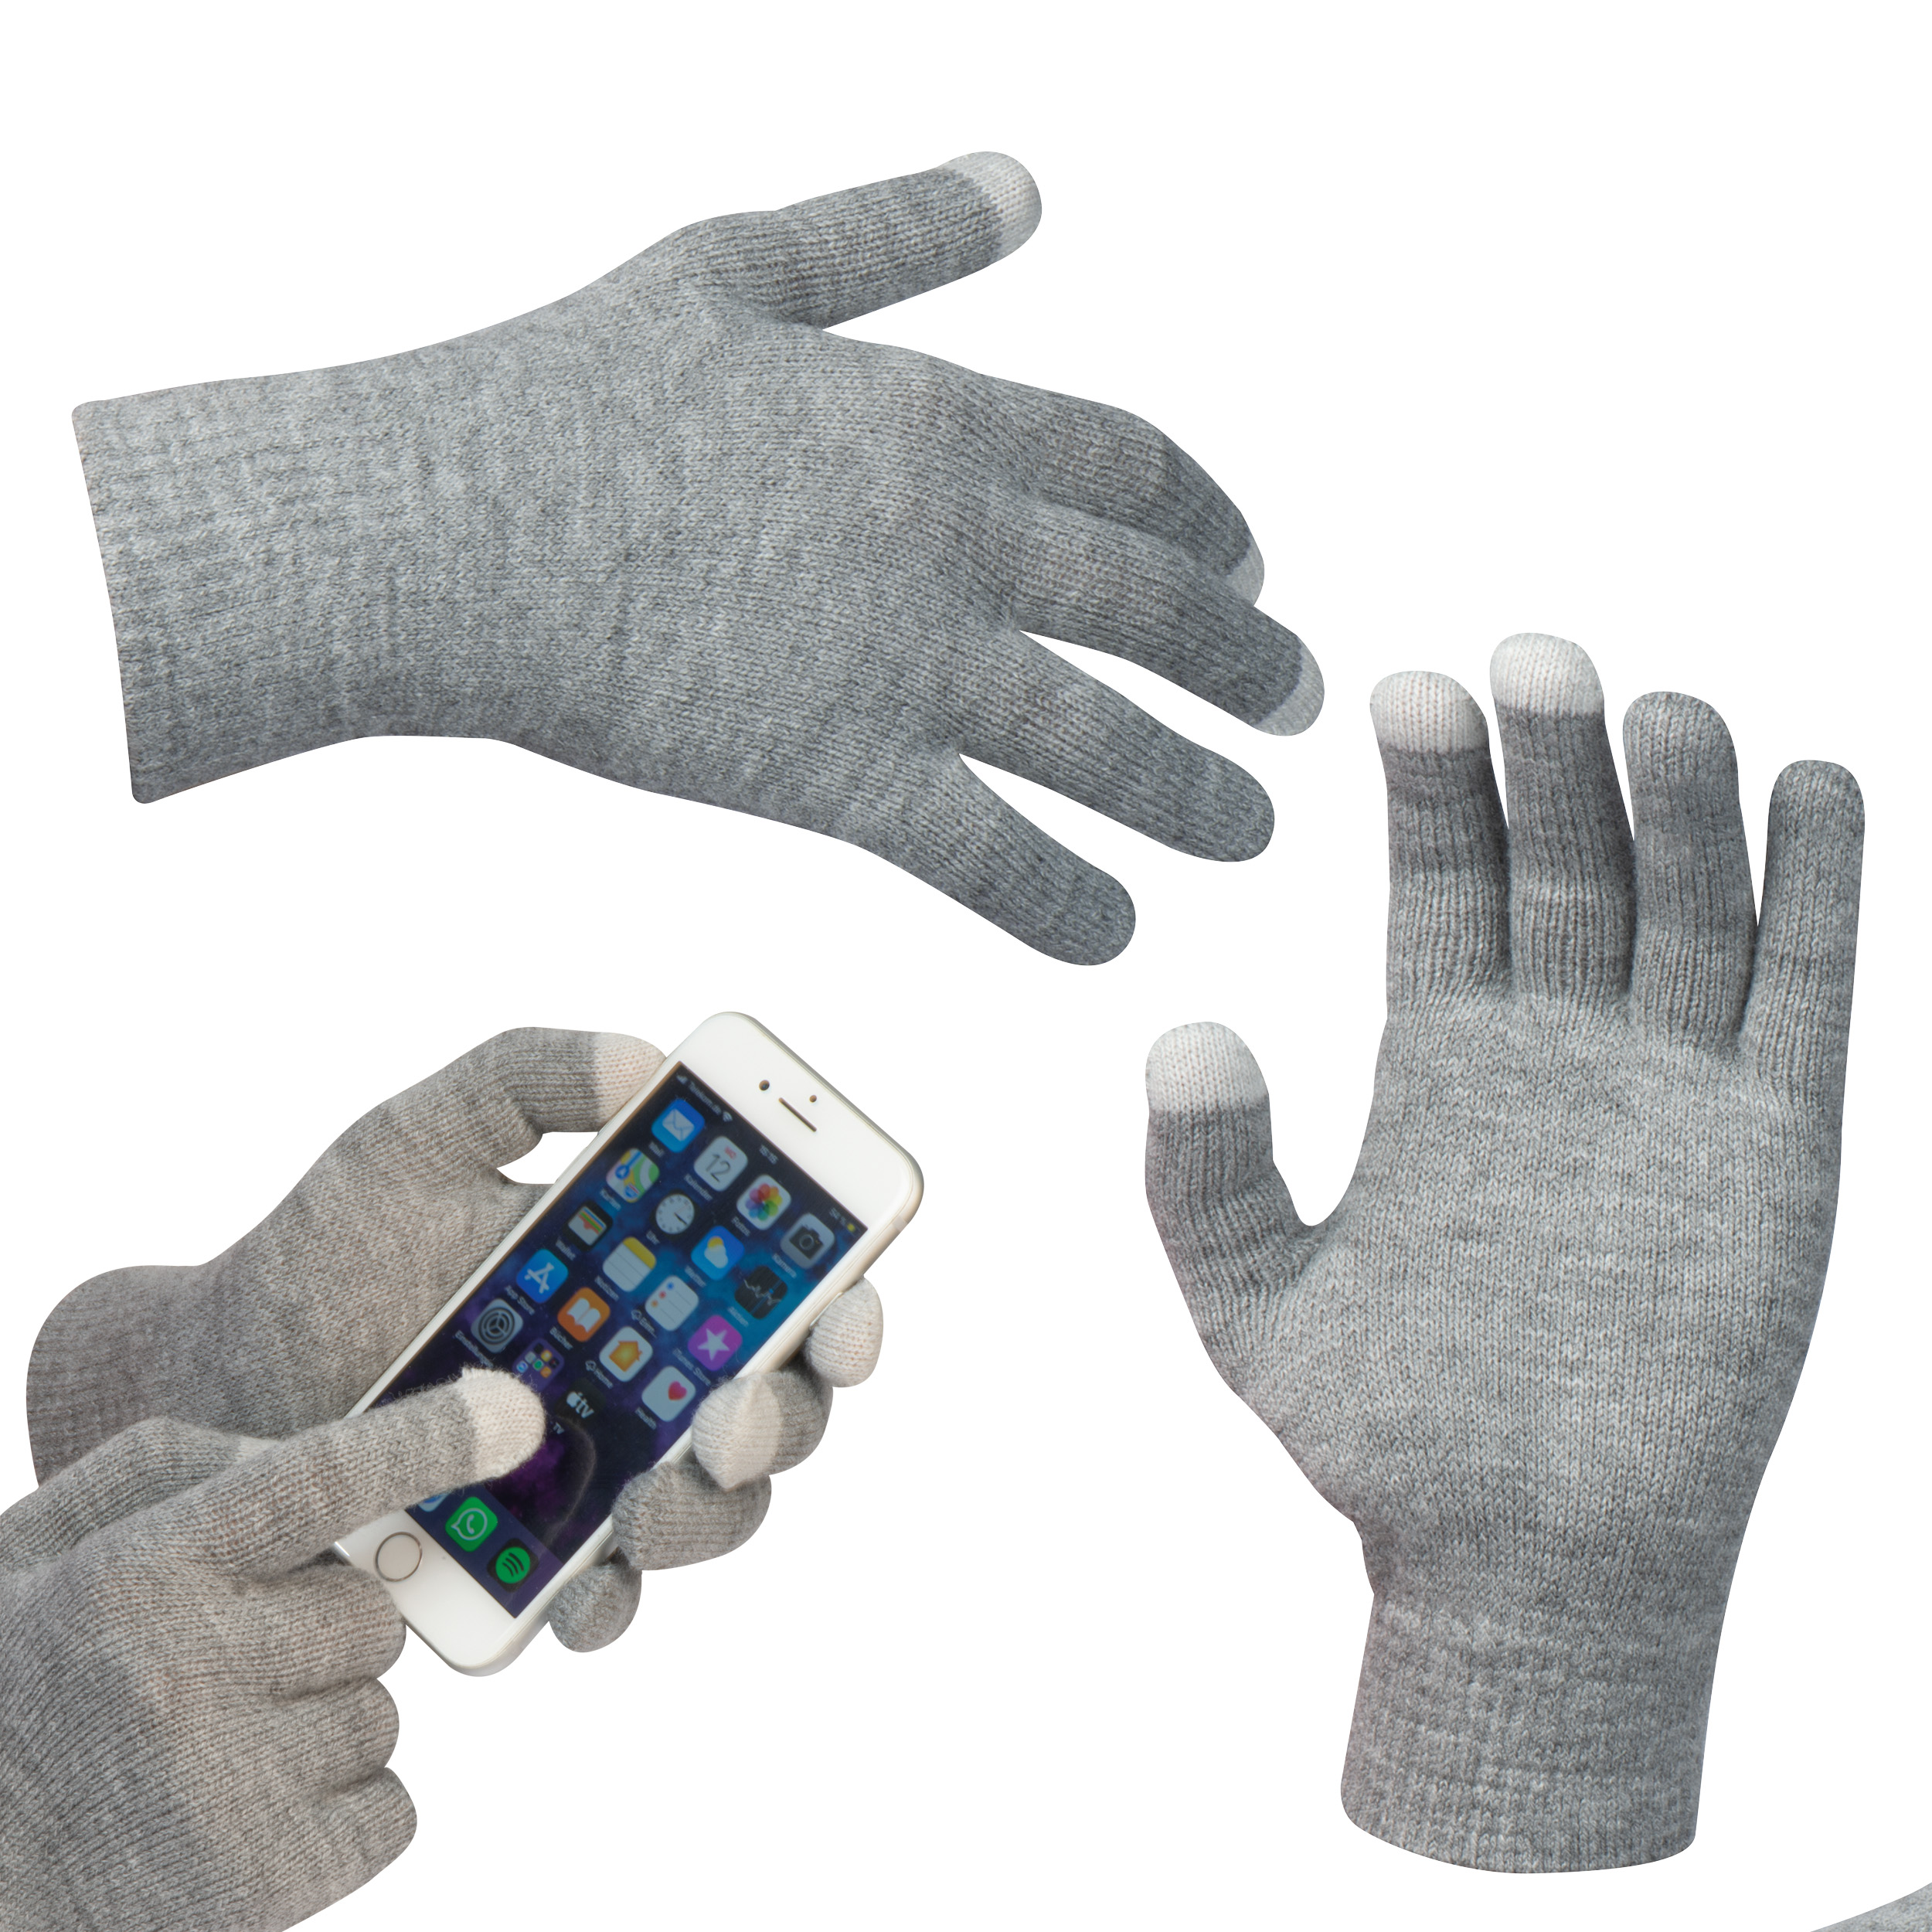 Handschuhe mit Touchfingern